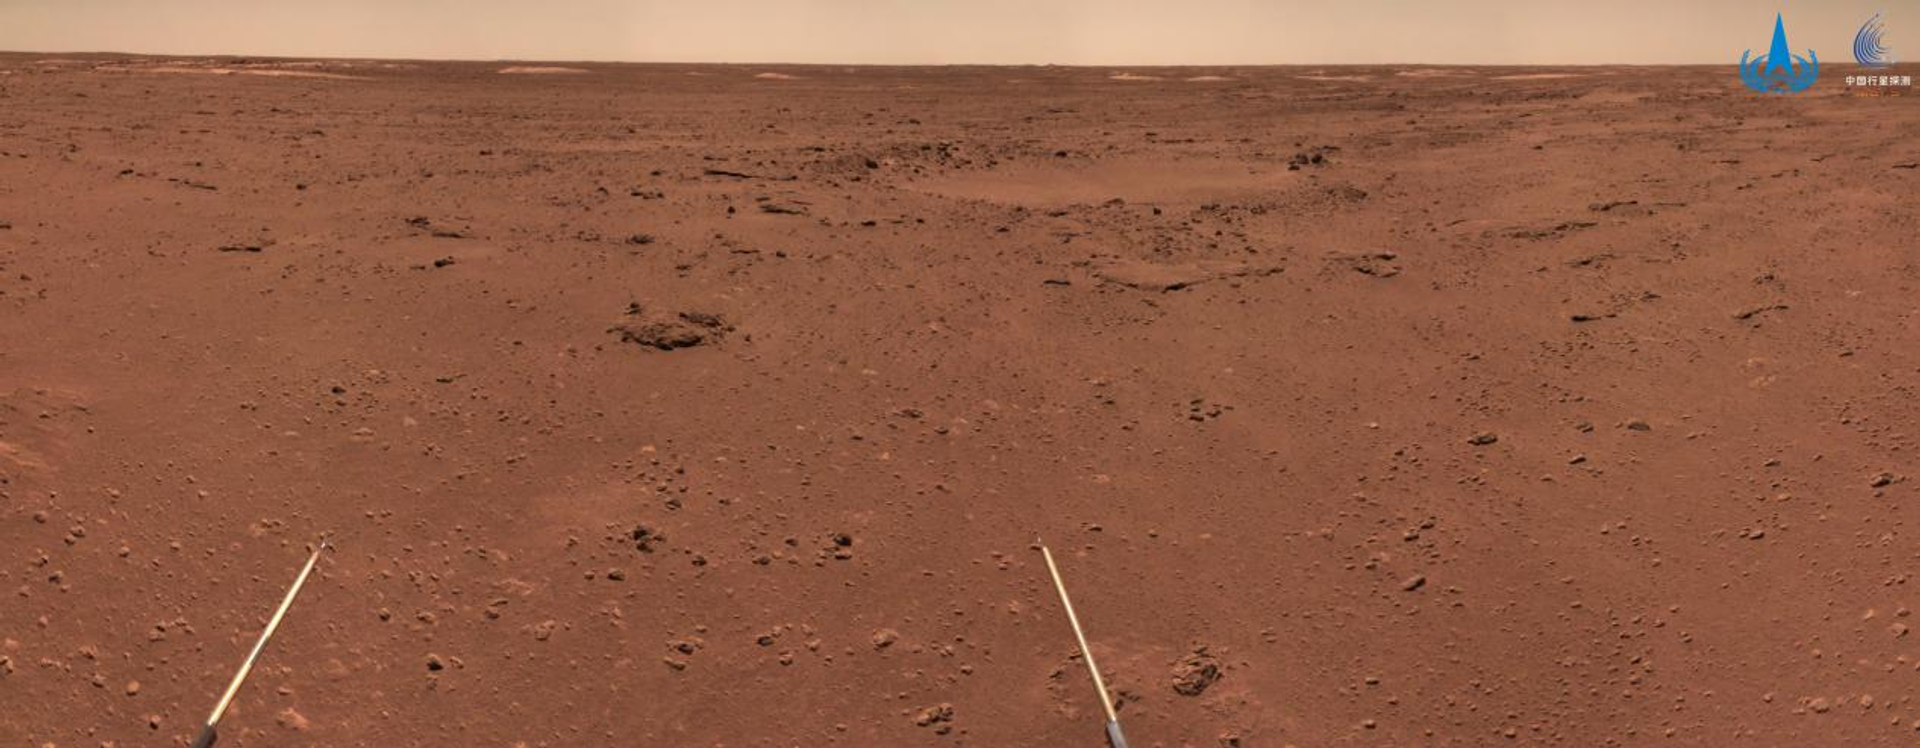 La superficie árida de Marte tomada por el róver Zhurong - Sputnik Mundo, 1920, 08.01.2022